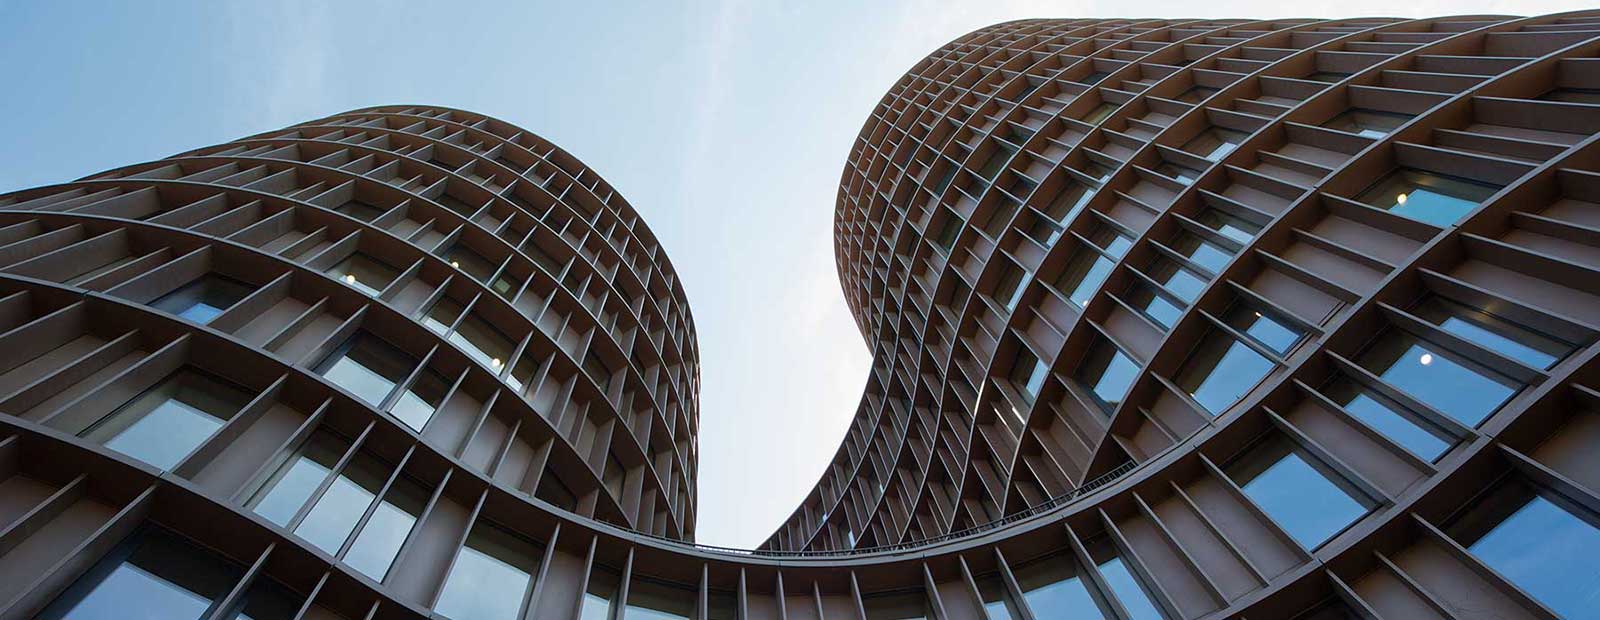 Modern architecture of Copenhagen